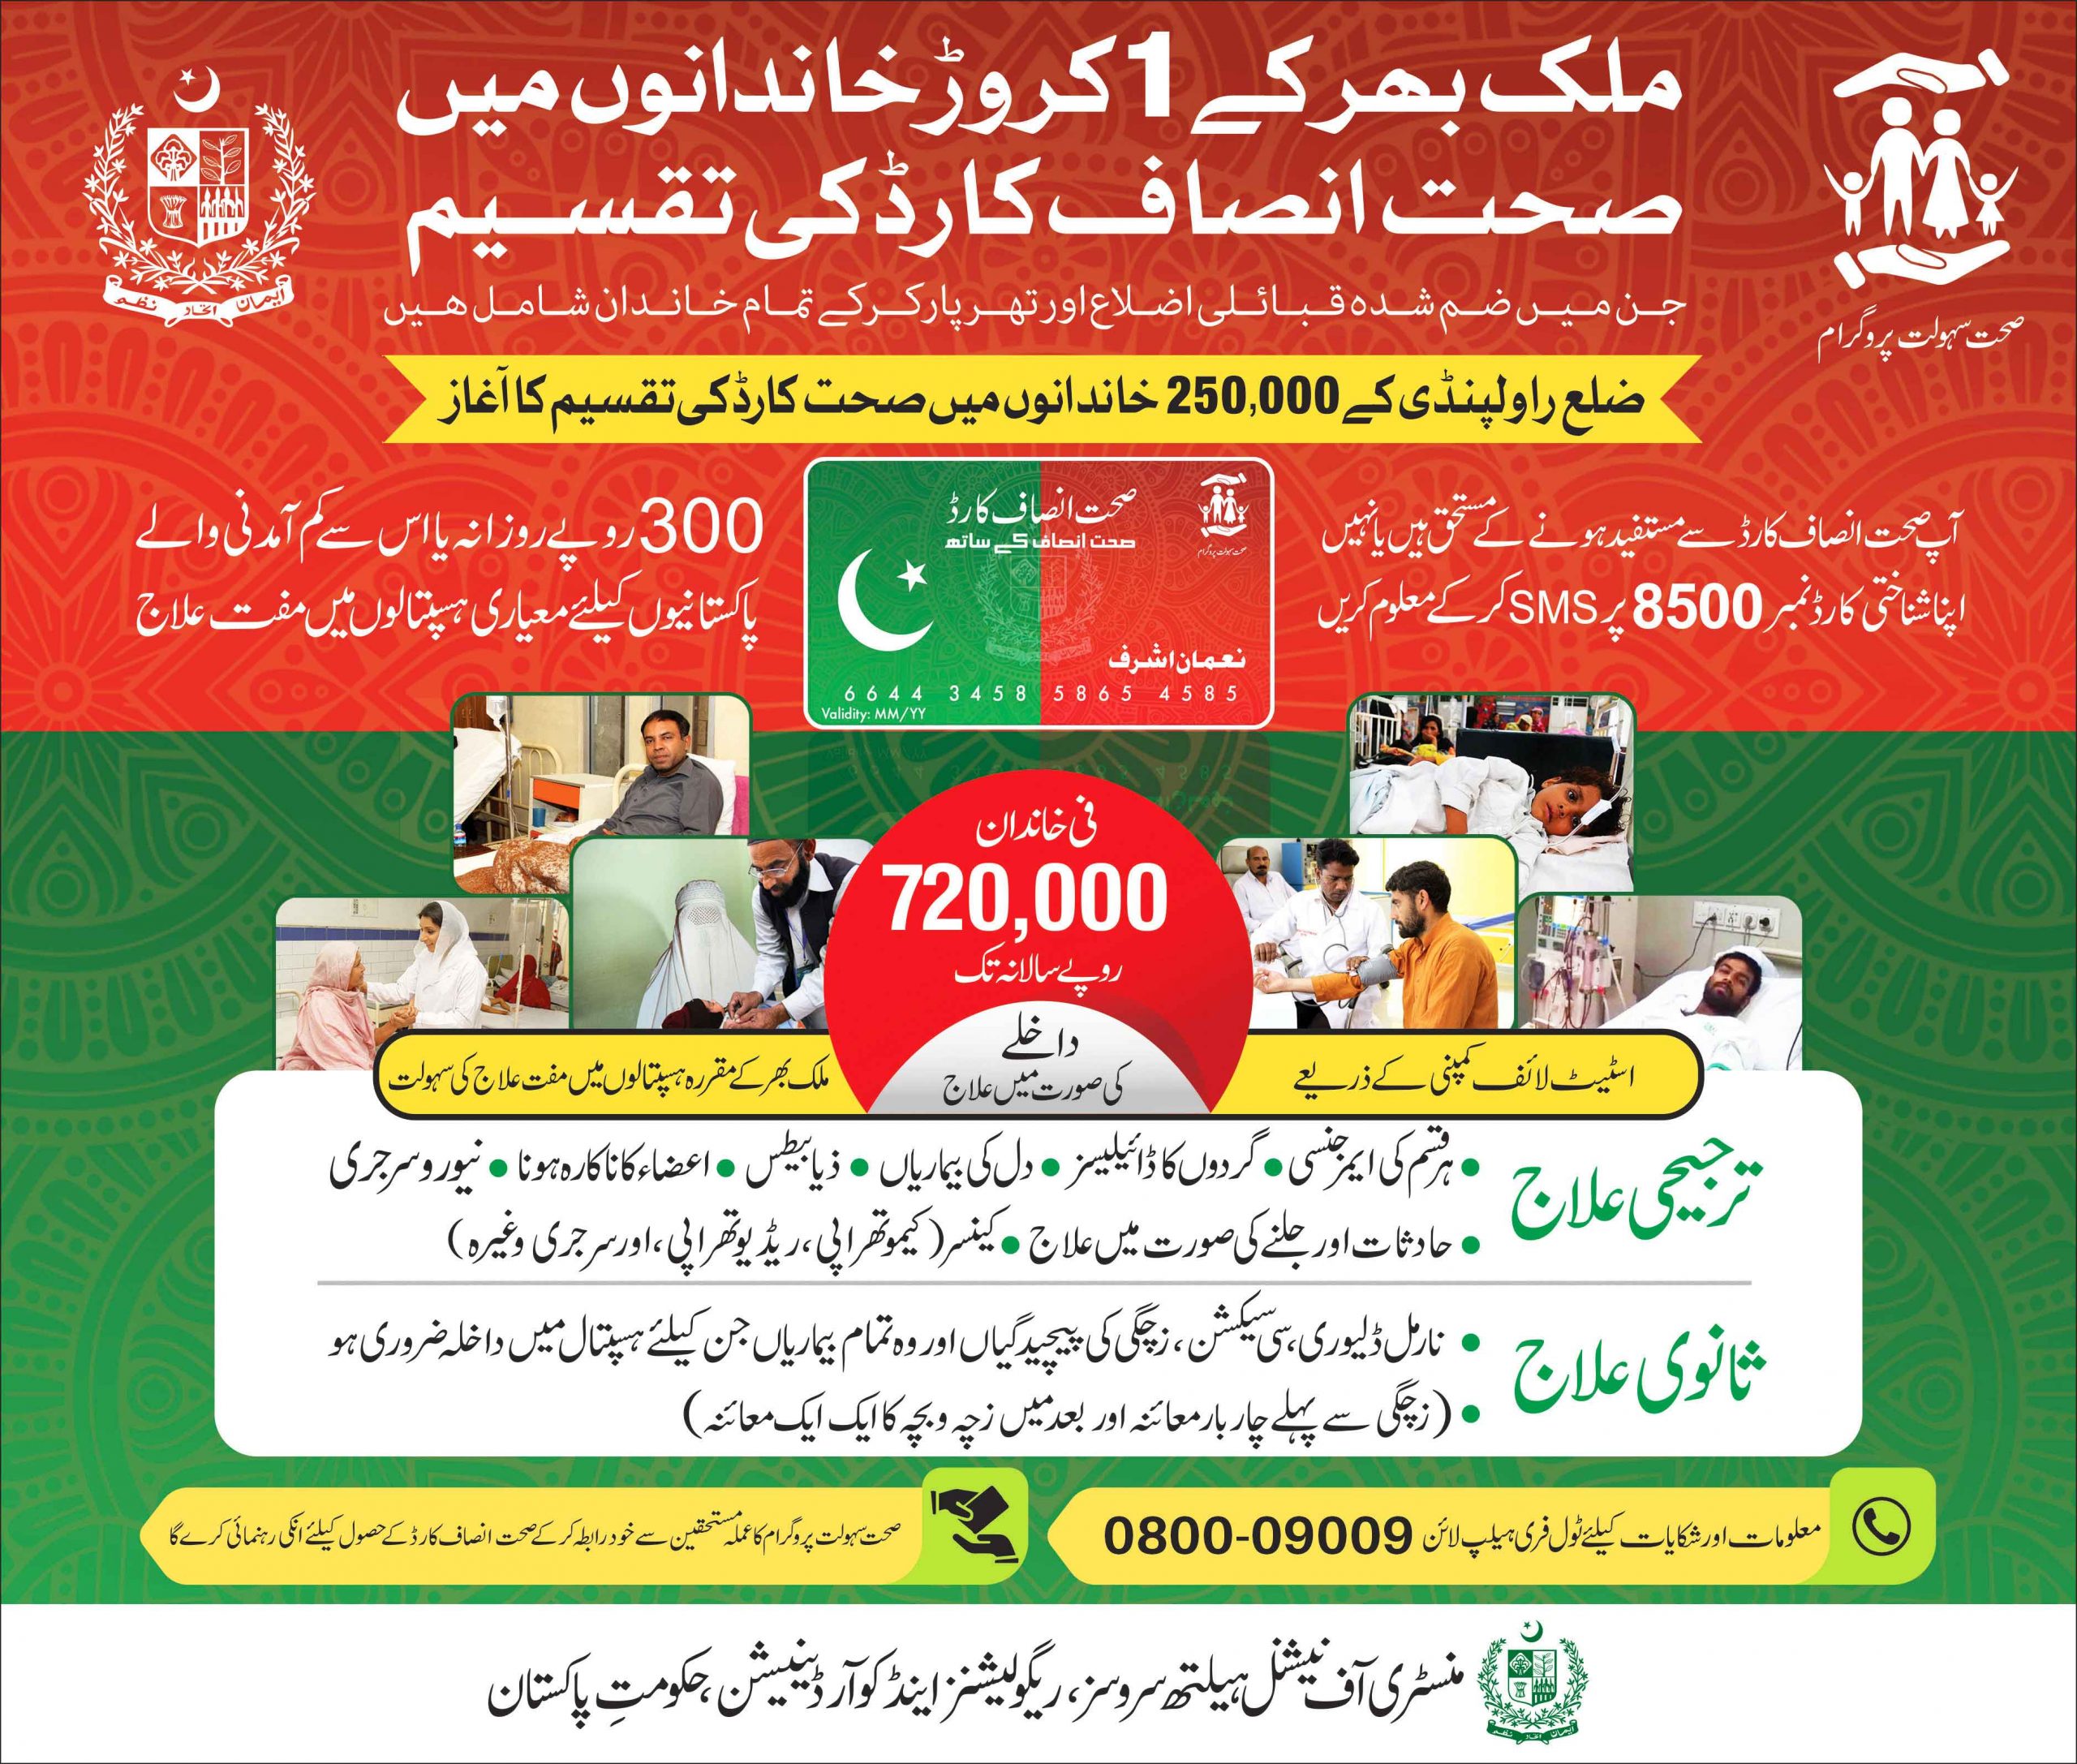 Sehat Insaf Card Punjab Online Registration